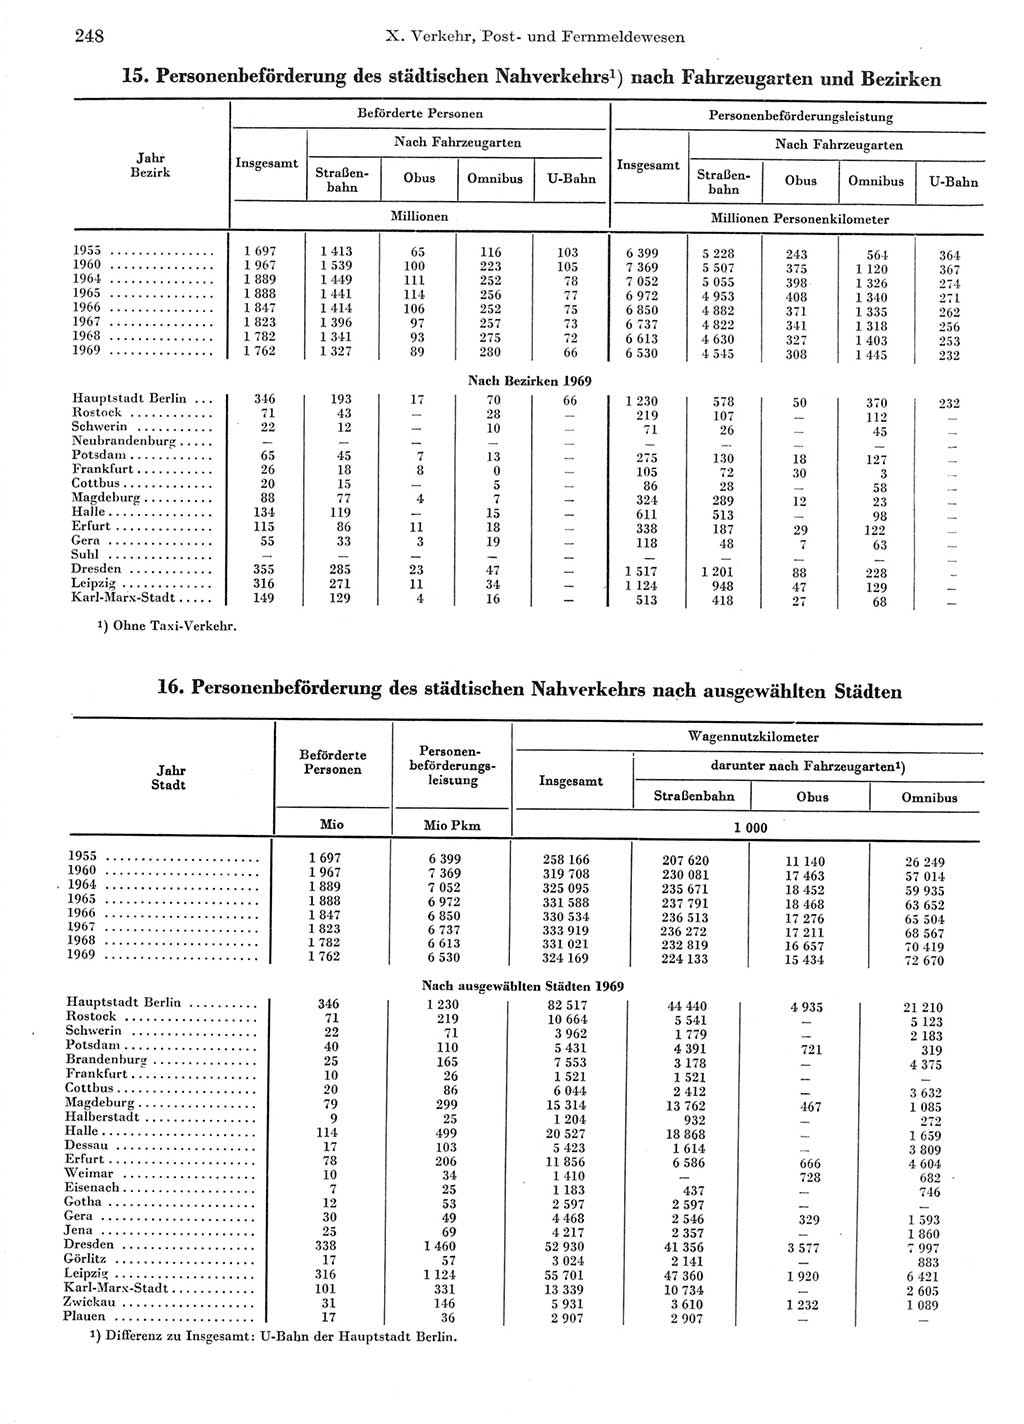 Statistisches Jahrbuch der Deutschen Demokratischen Republik (DDR) 1970, Seite 248 (Stat. Jb. DDR 1970, S. 248)